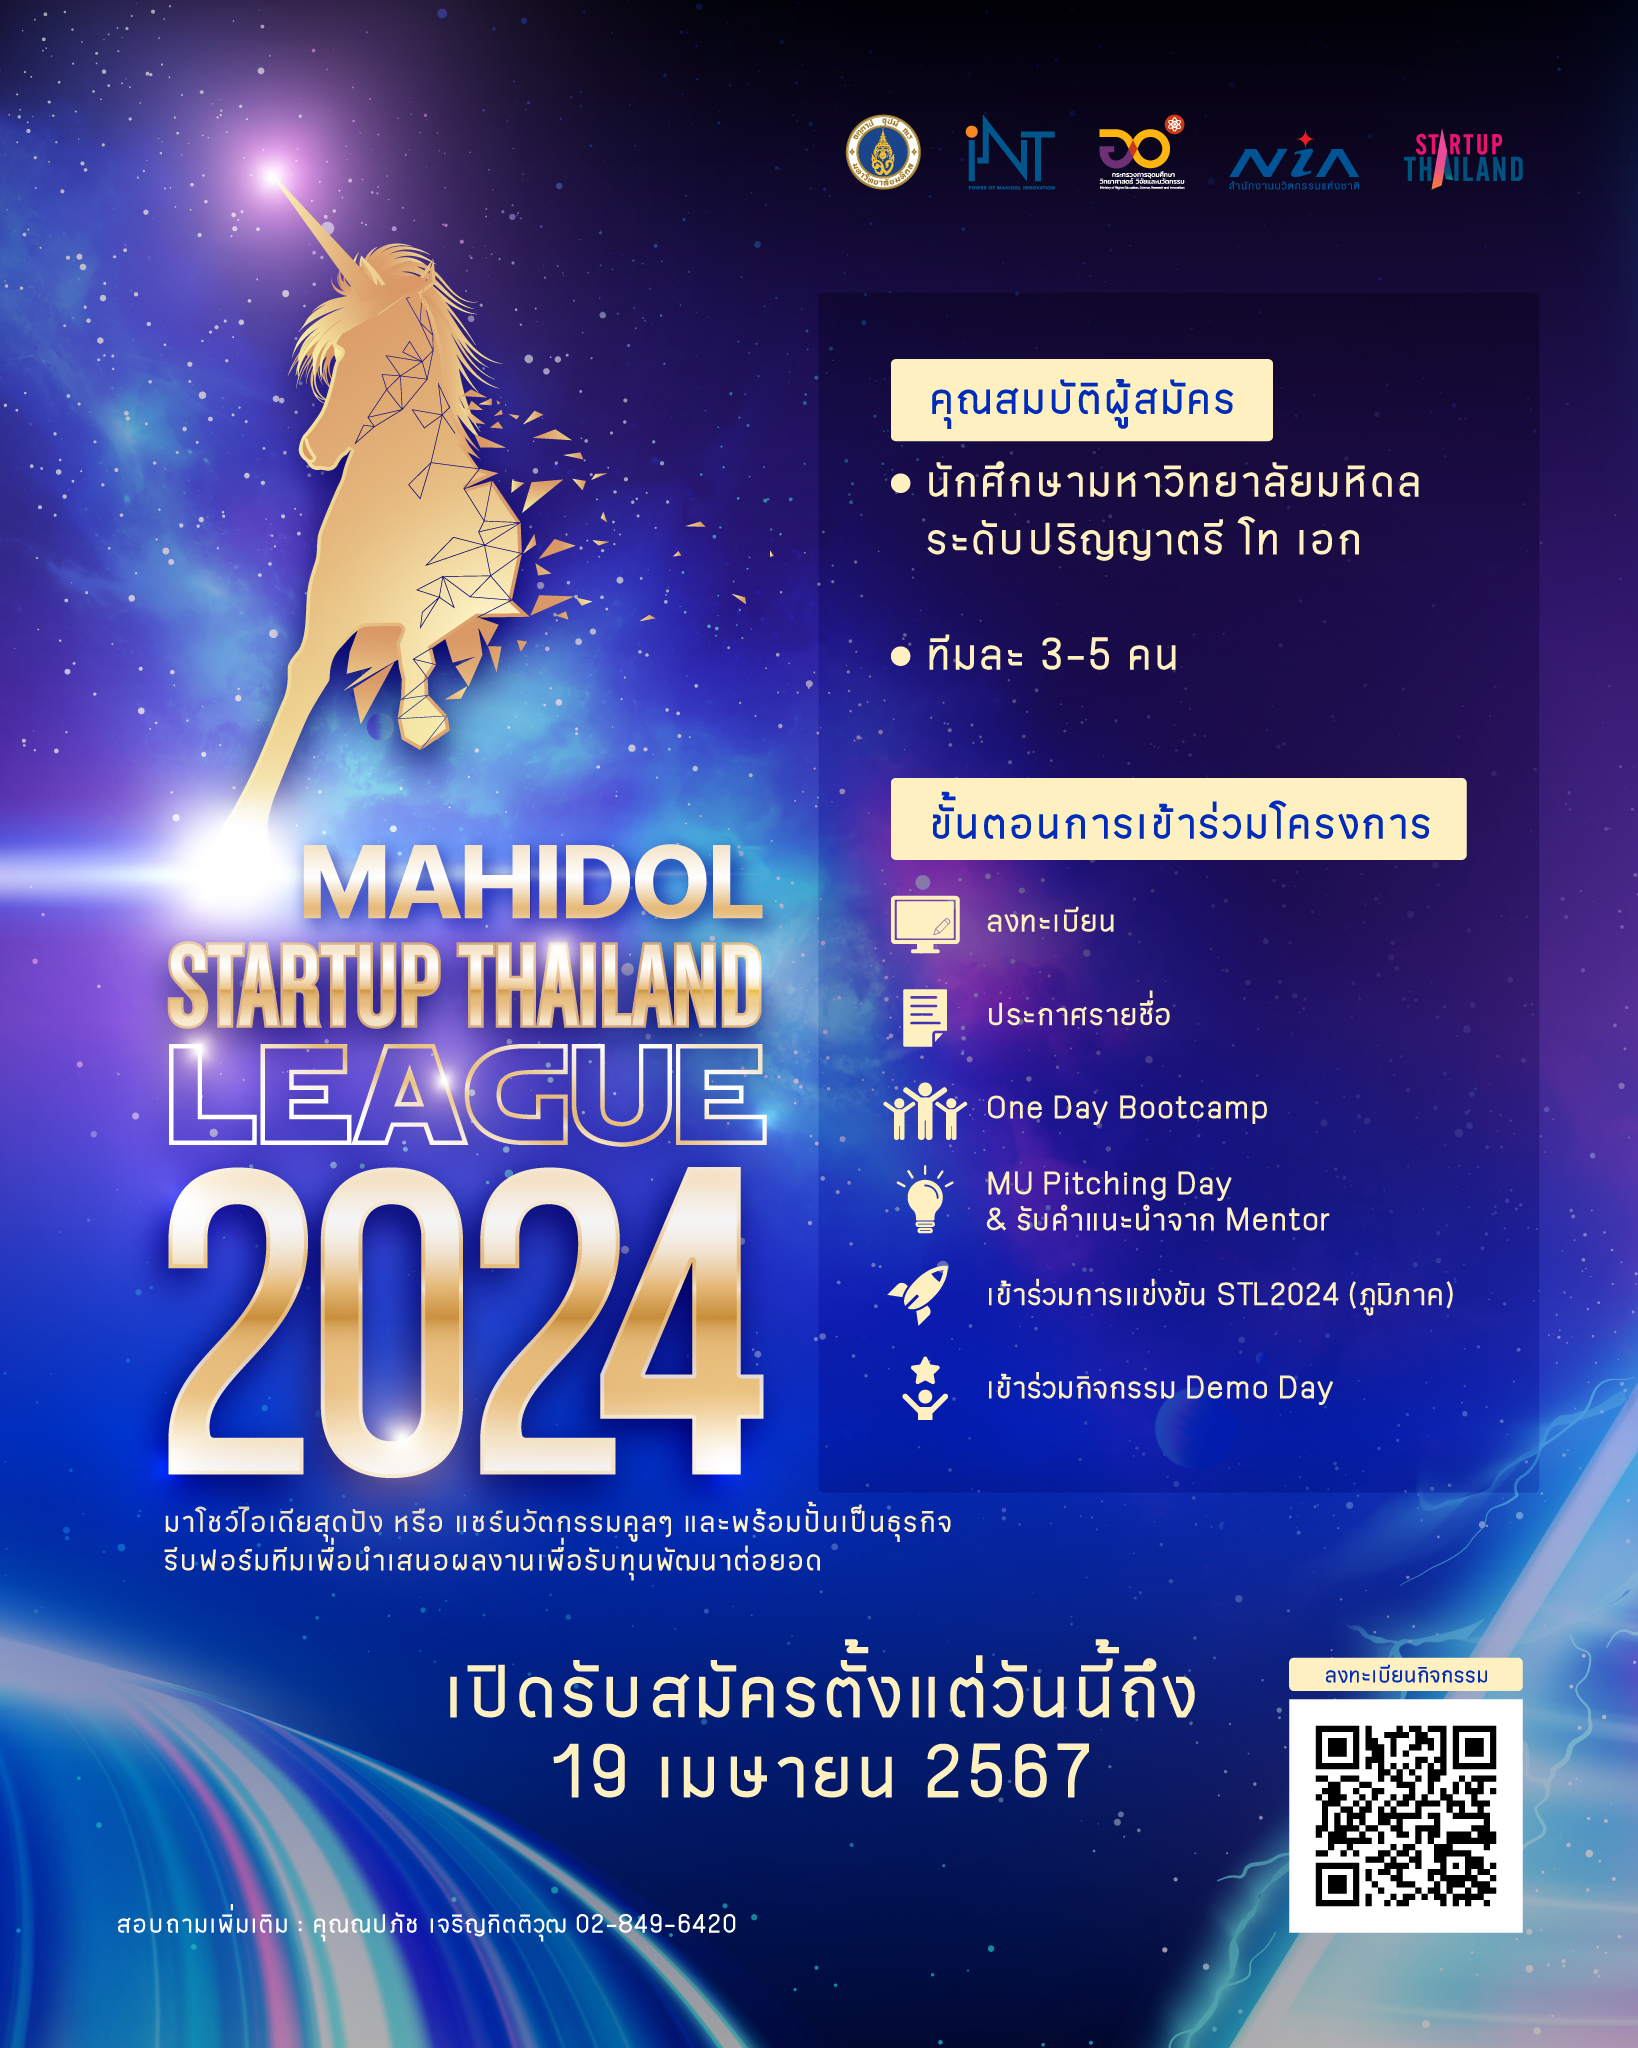 Mahidol Startup Thailand League 2024